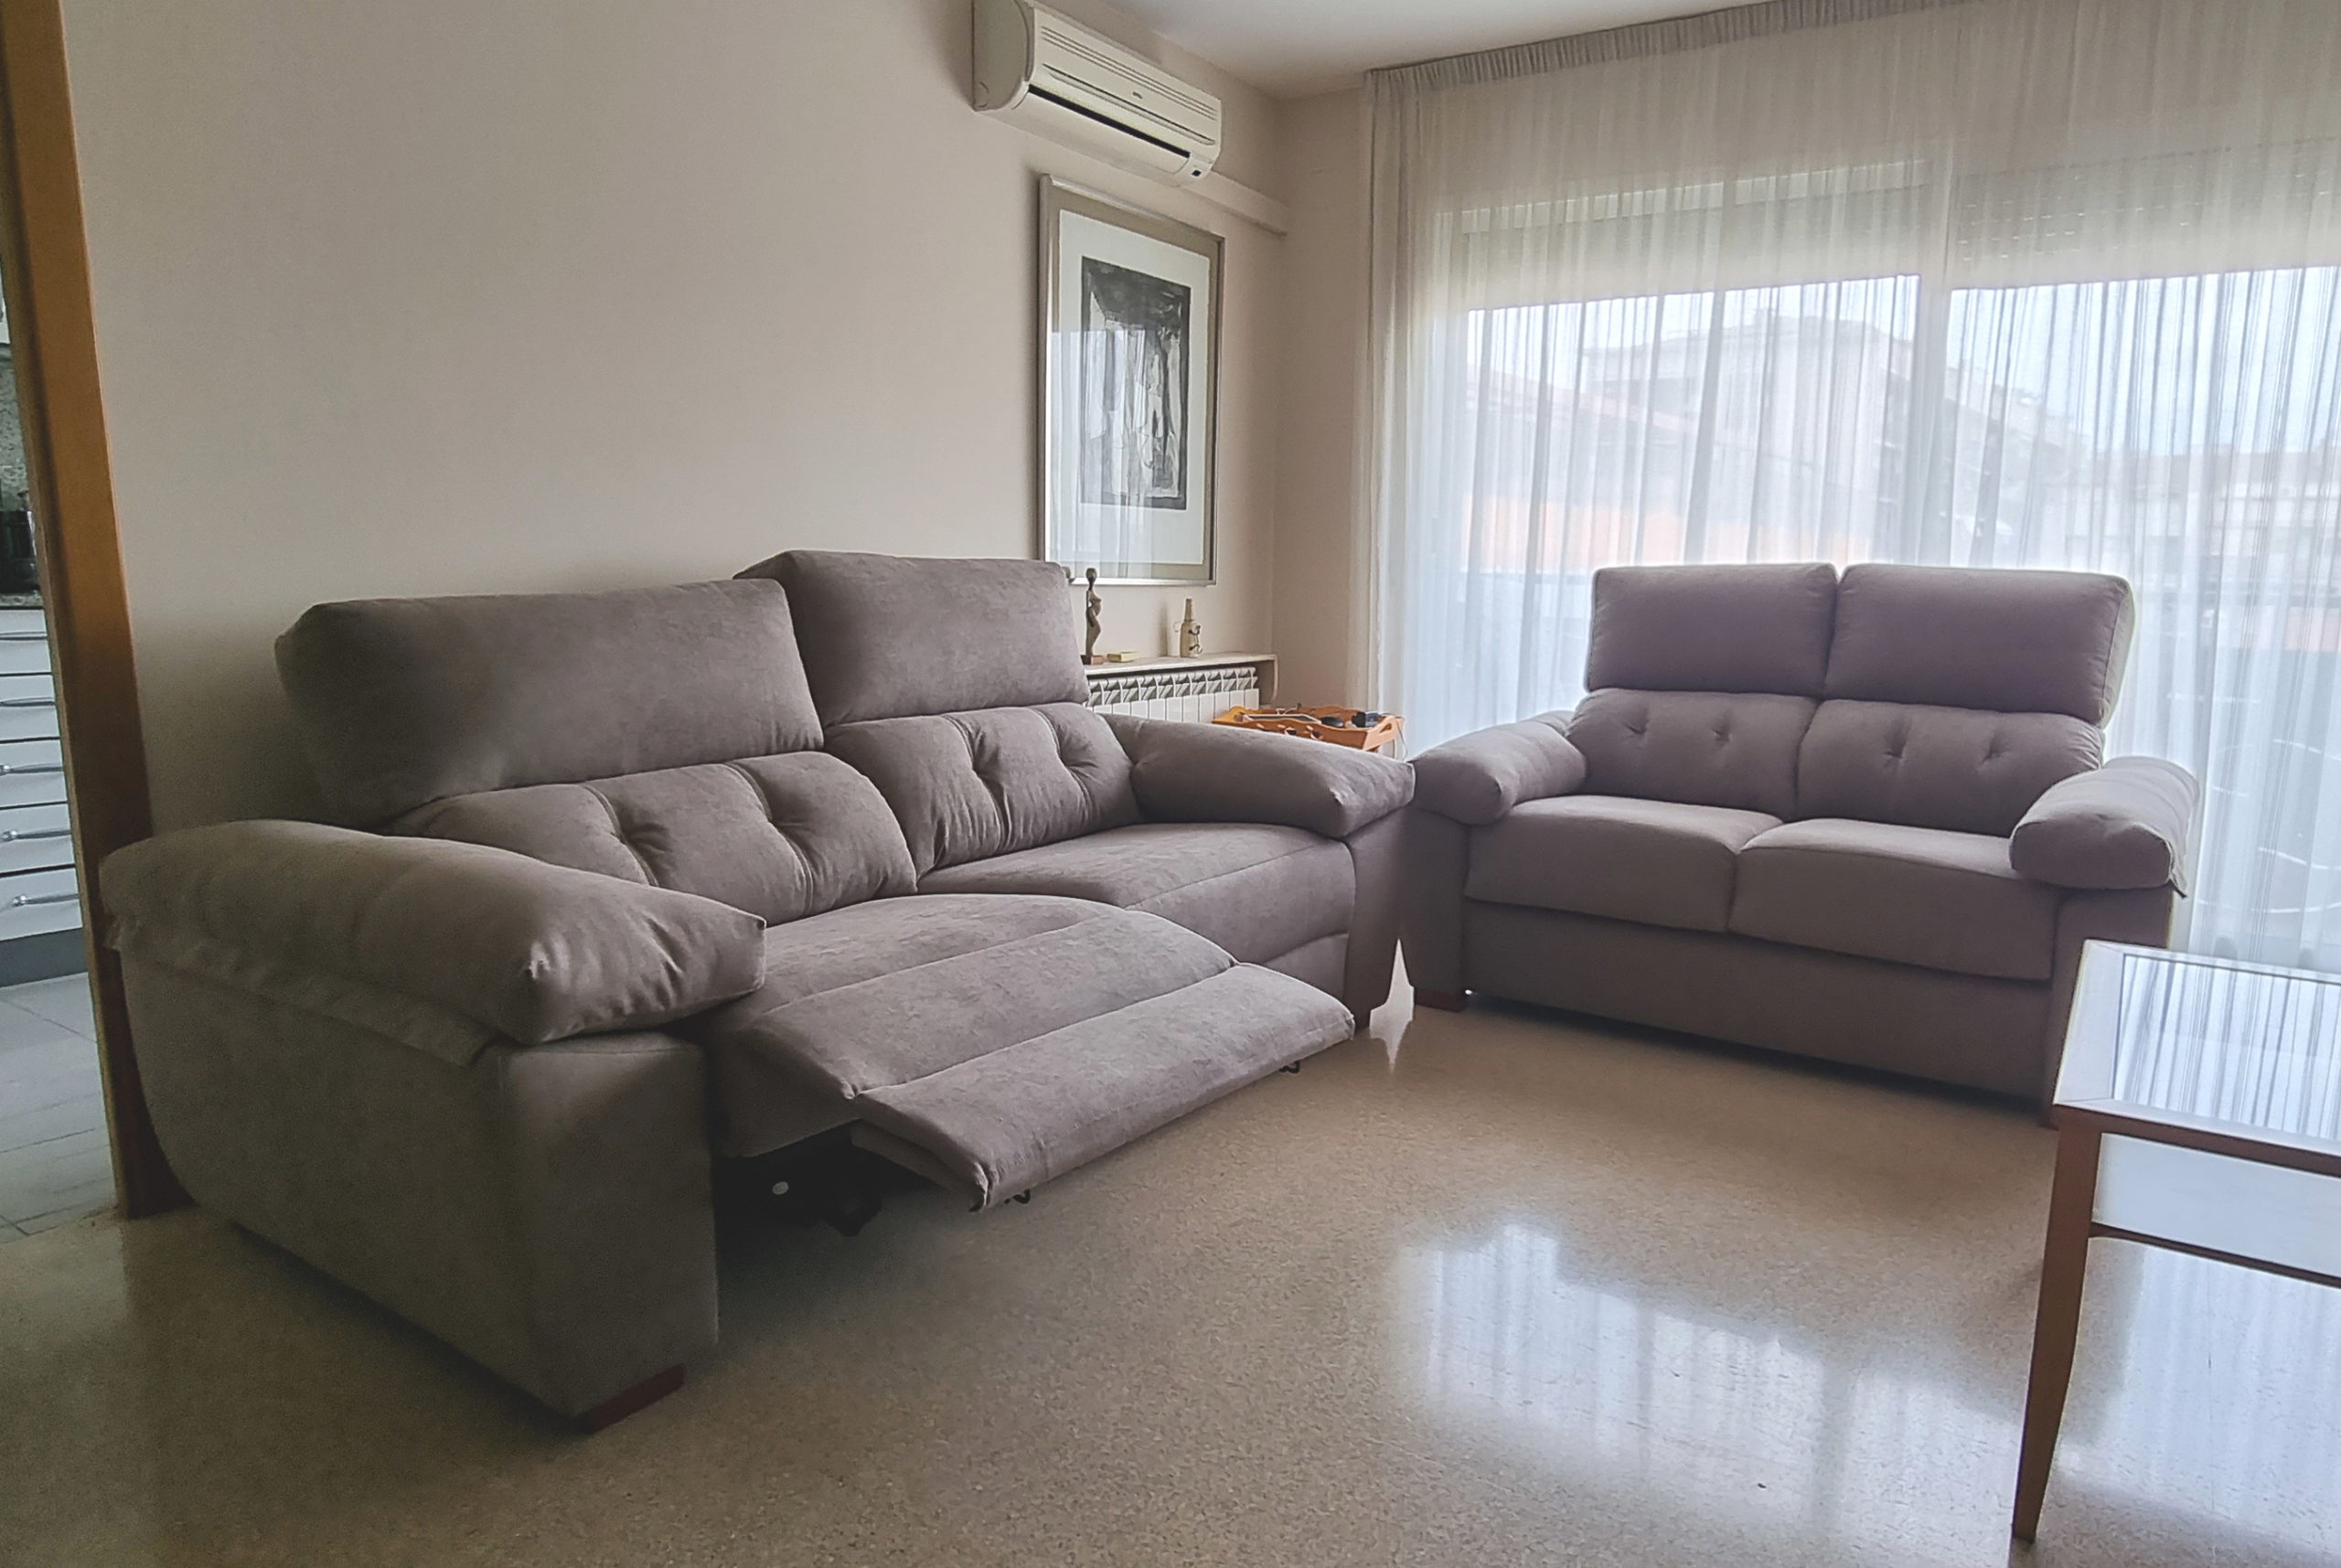 Sofa relax asientos motorizados, respaldos altos y cojín riñonero